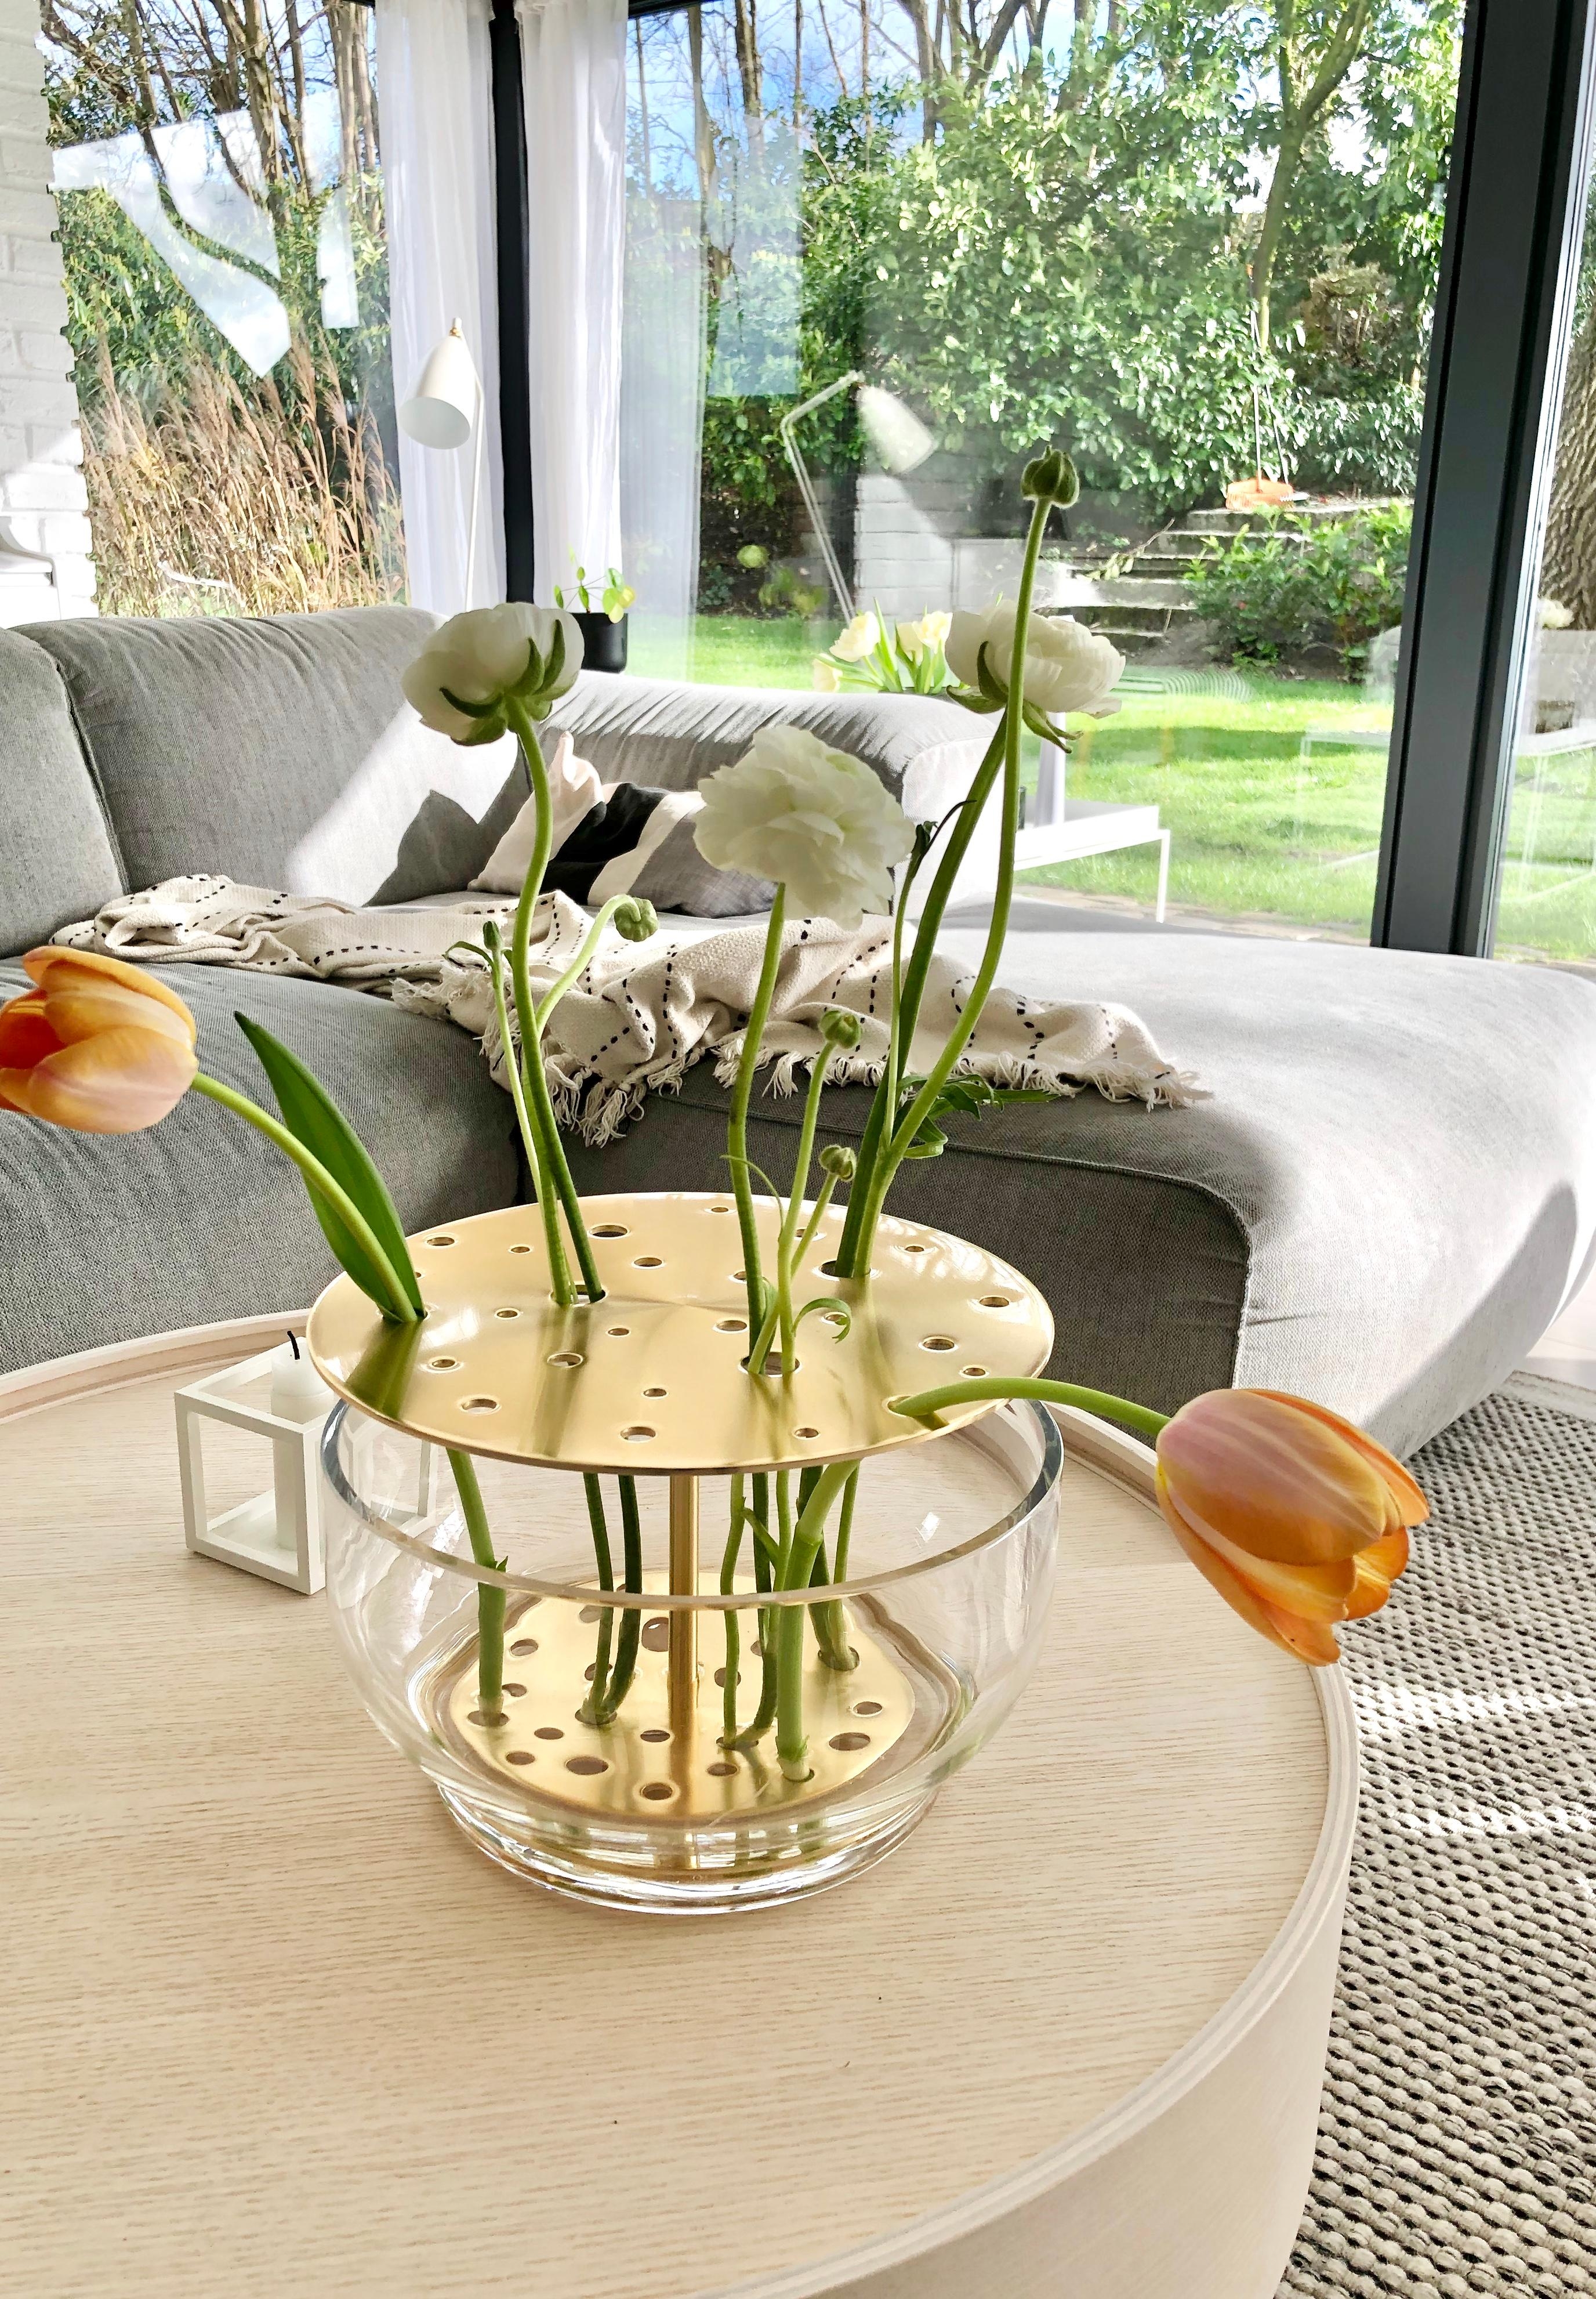 Blumen und Sonne pur 😍 #couchstyle